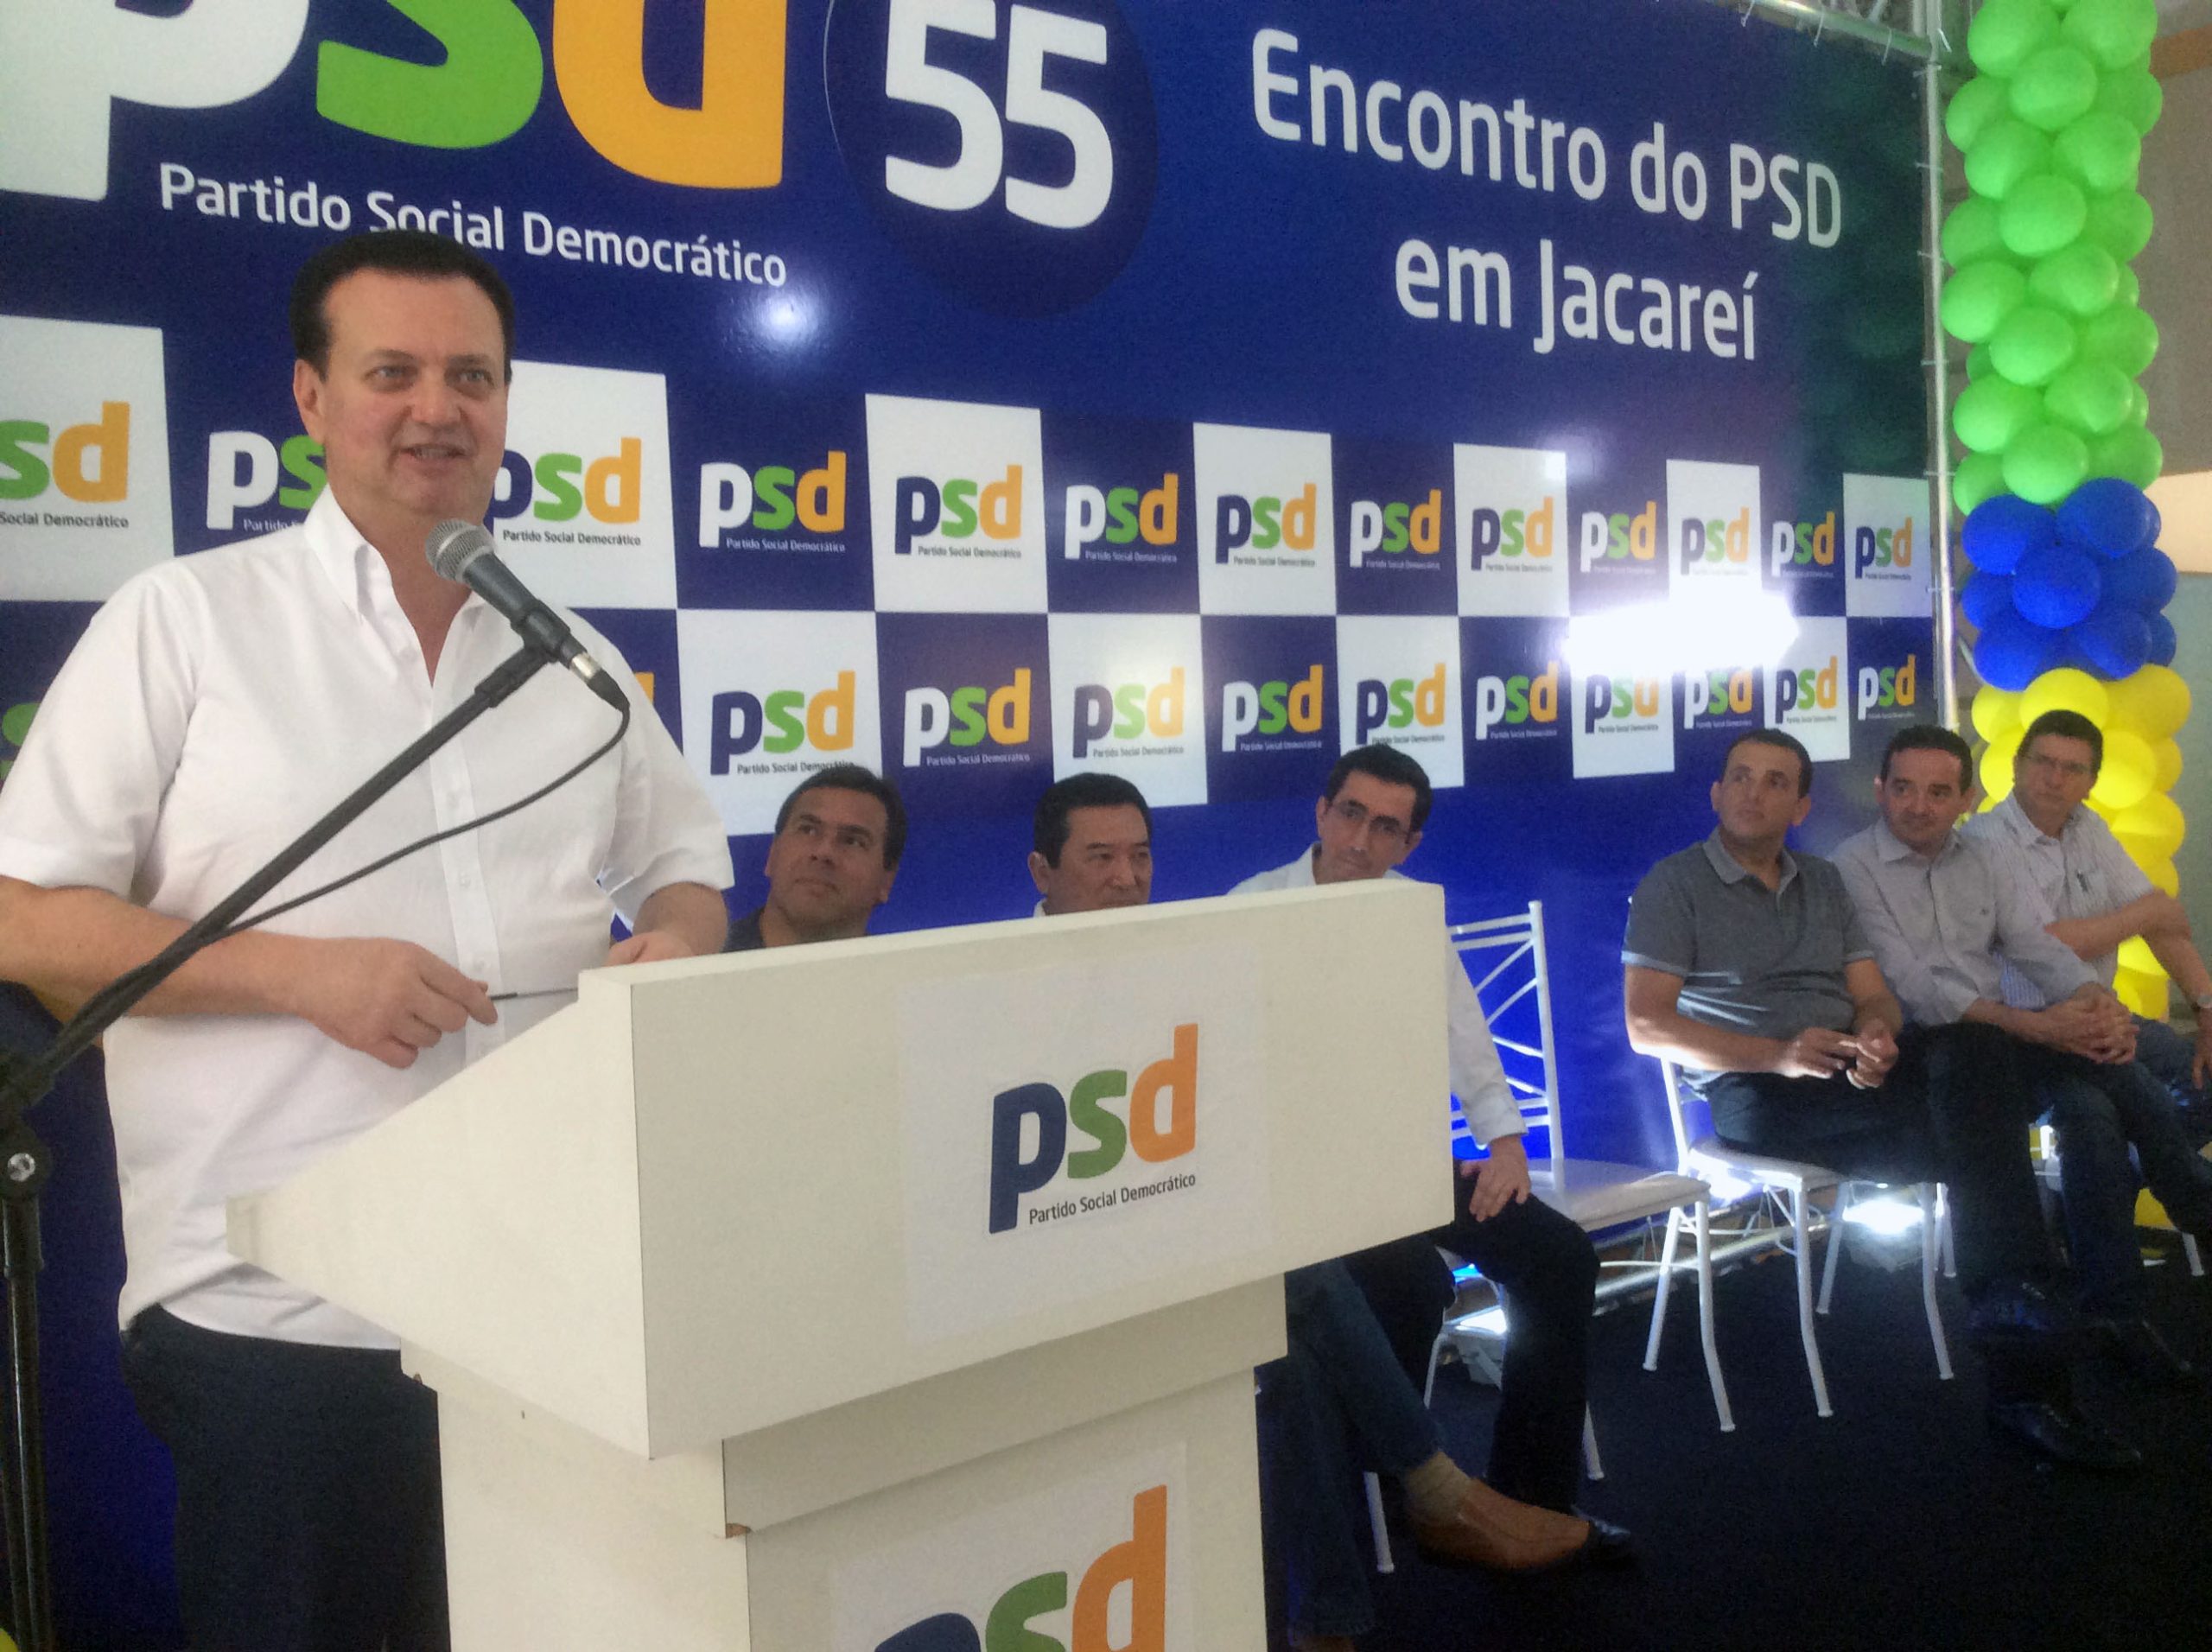 Ministro Kassab: partido deve expressar o sentimento dos brasileiros, que querem a conciliação